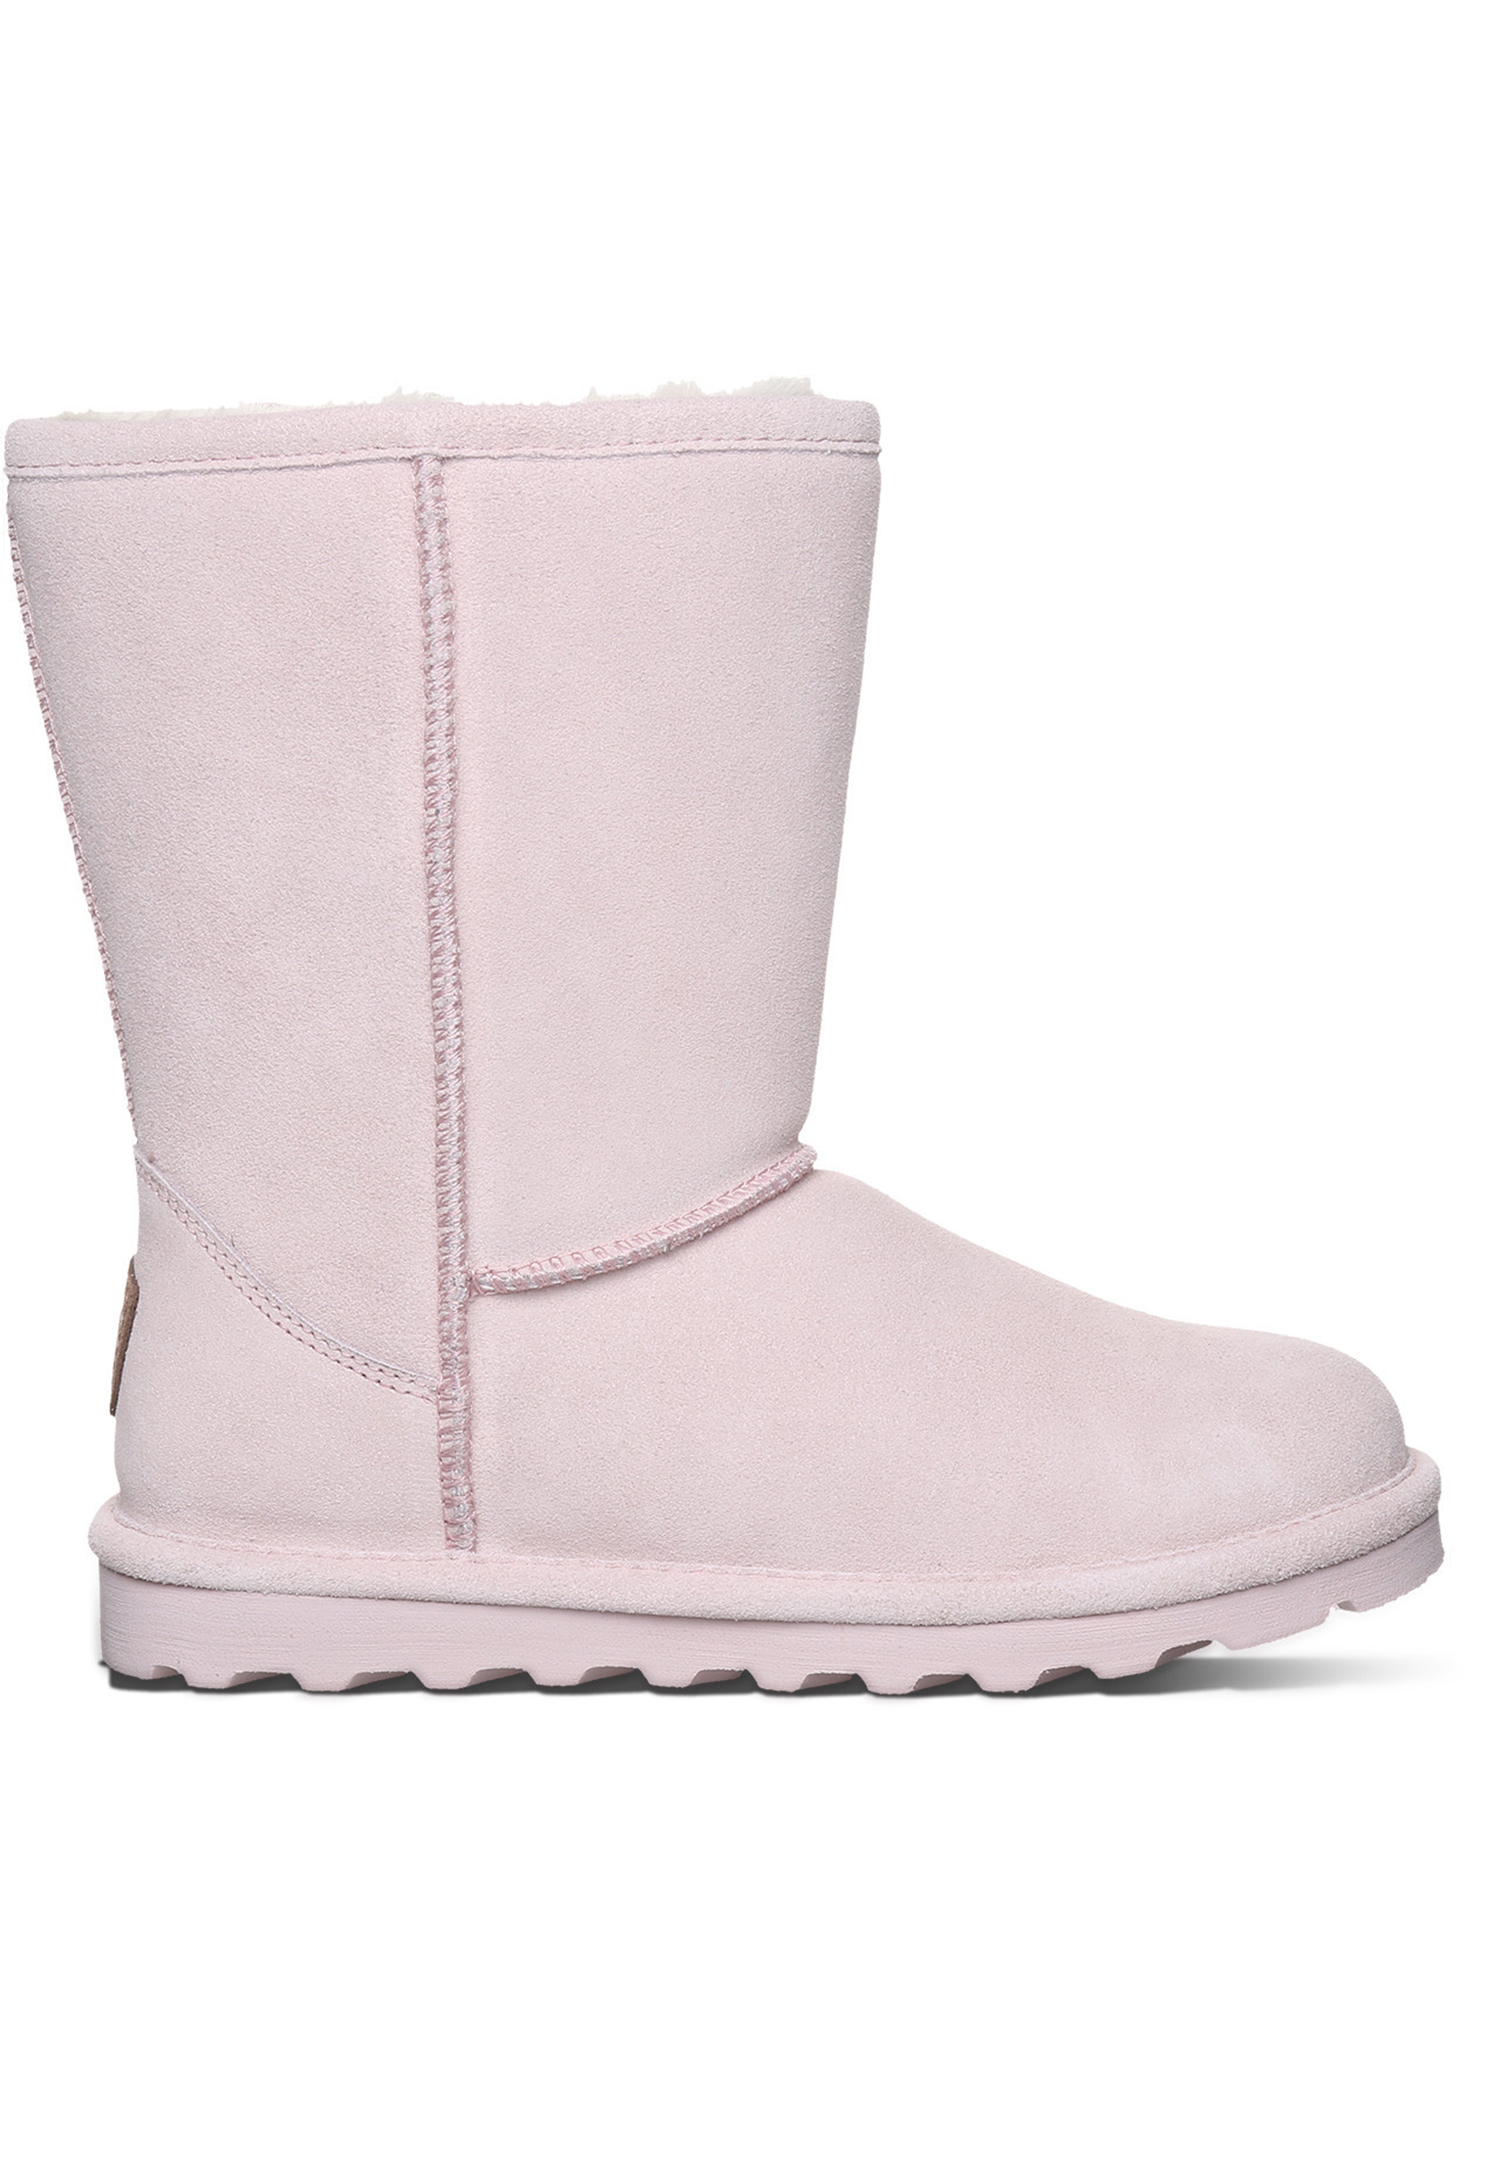 BEARPAW Elle Short Damen Winterstiefel Lammfellstiefel Boots 1962W 635 Pale Pink